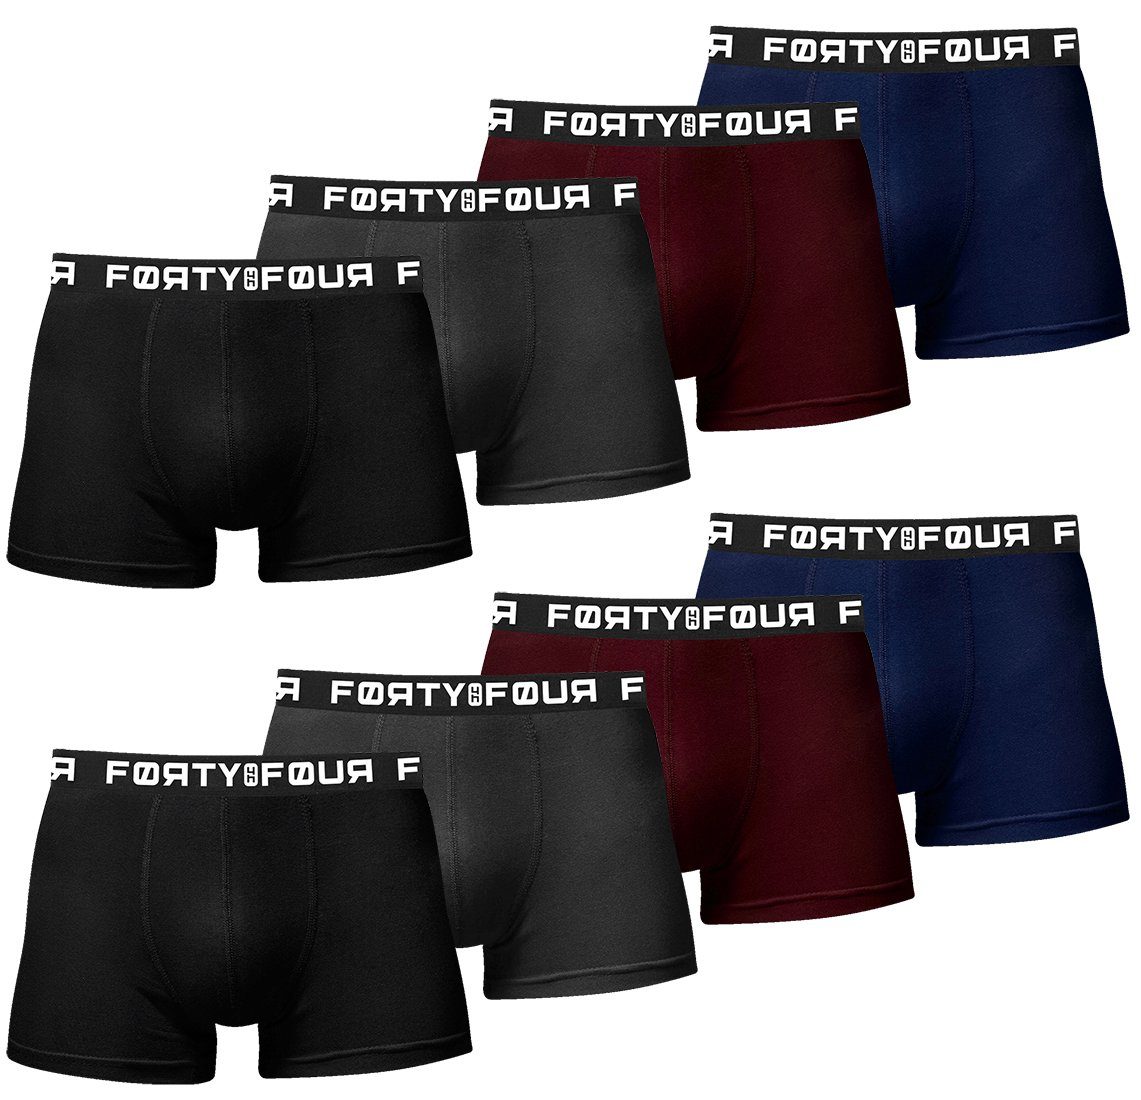 FortyFour Boxershorts Herren Männer Unterhosen Baumwolle Premium Qualität perfekte Passform (Vorteilspack, 8er Pack) S - 7XL 716b-mehrfarbig